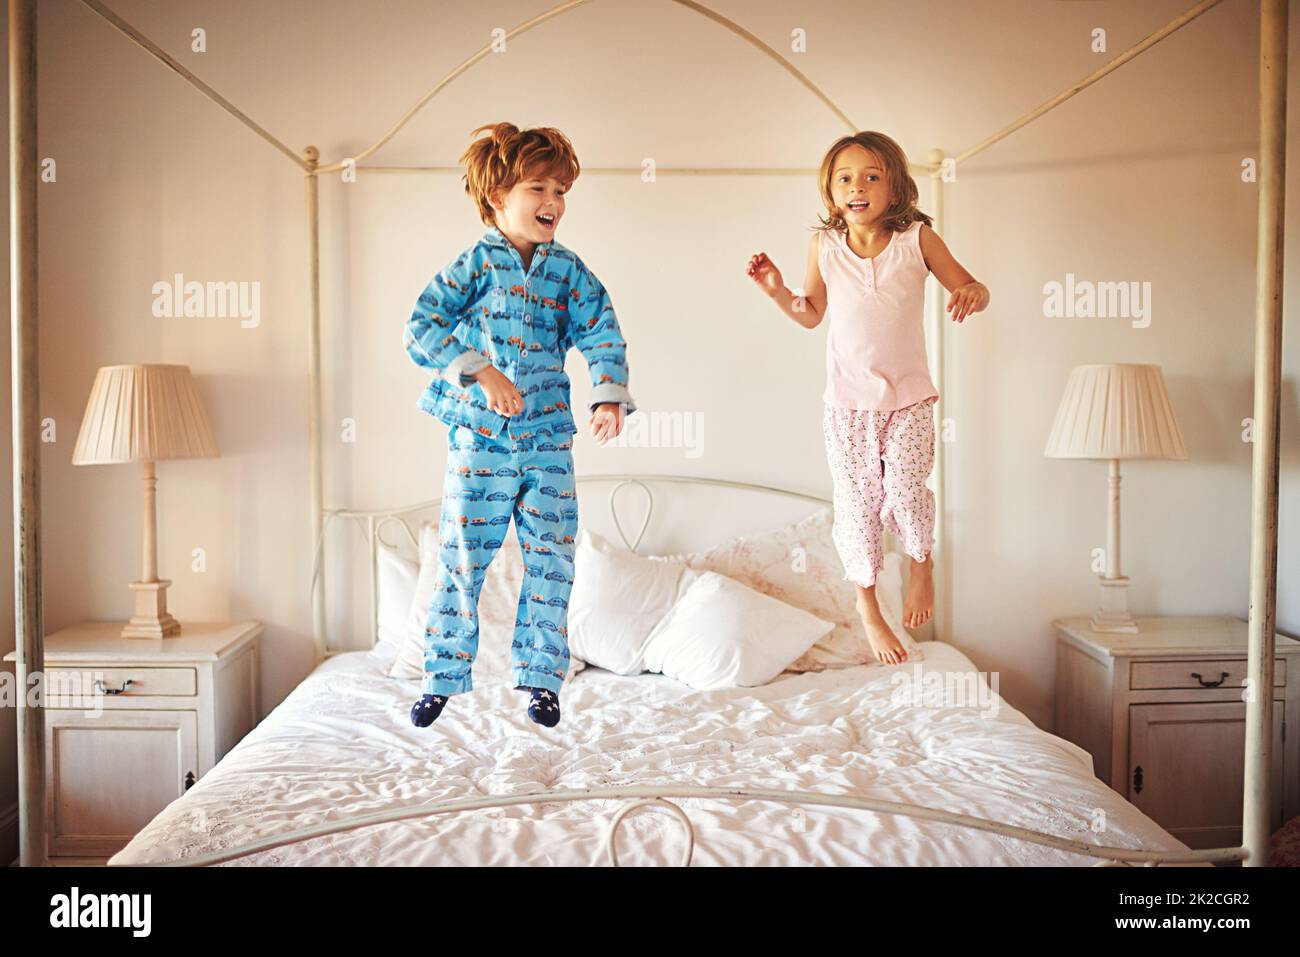 Ich kann höher springen als Ihr. Aufnahme von zwei kleinen Kindern, die zu Hause auf einem Bett zusammenspringen. Stockfoto